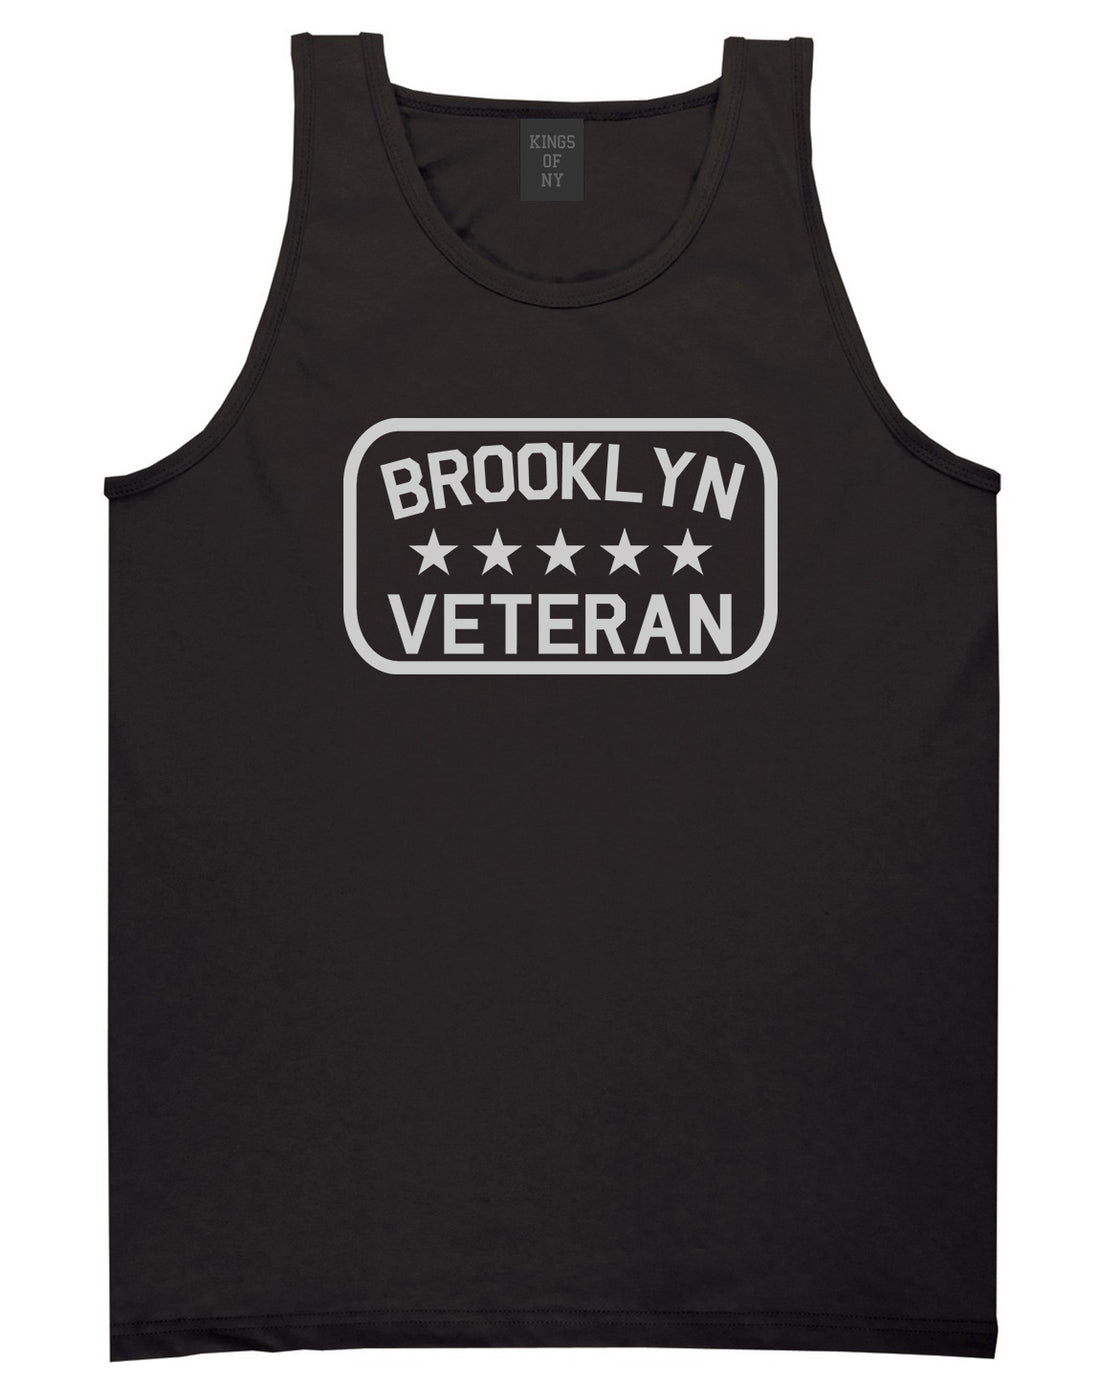 Brooklyn Veteran Mens Tank Top Shirt Black